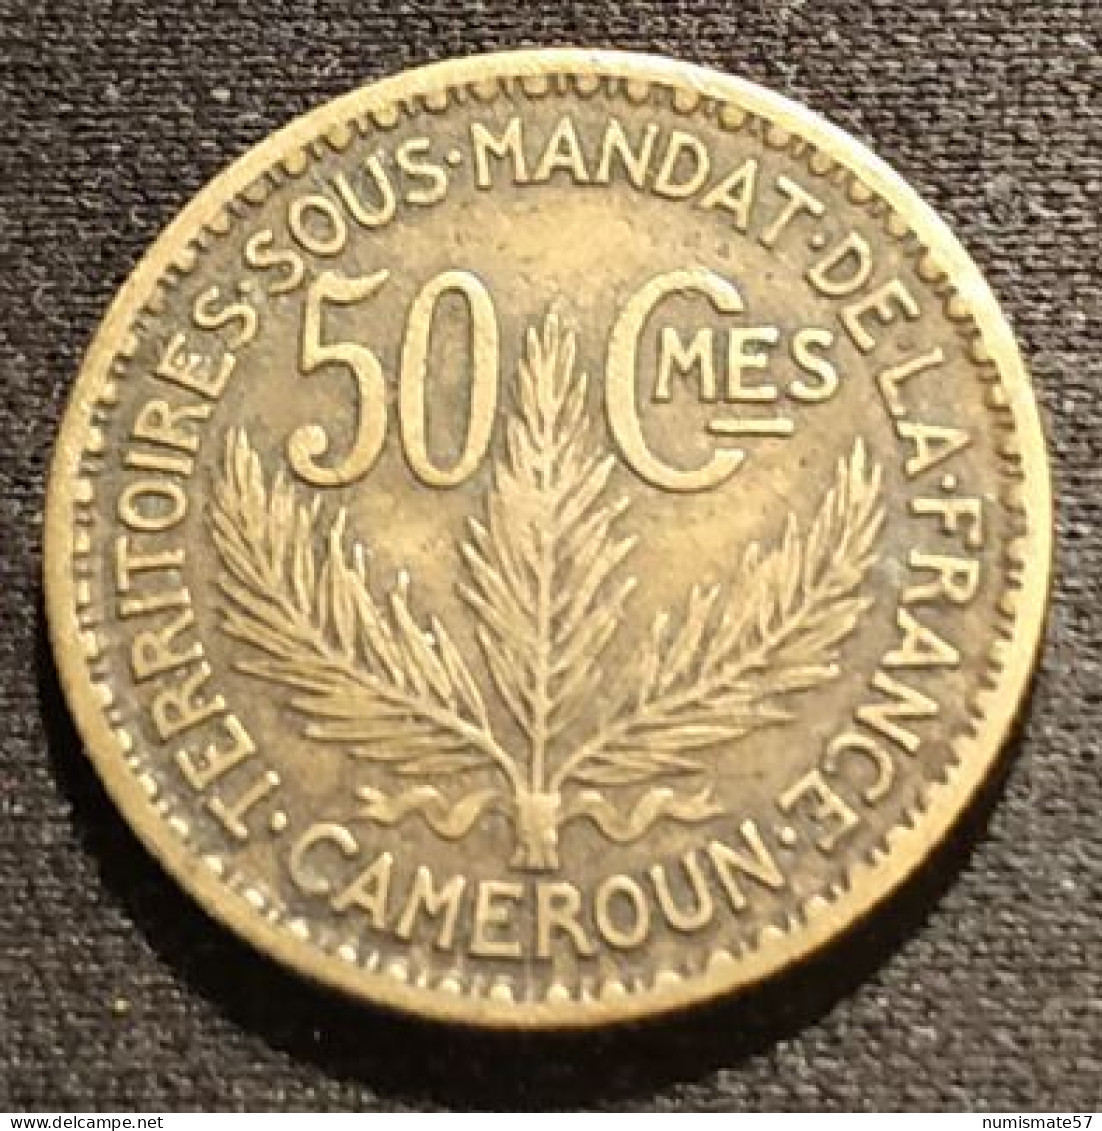 RARE - CAMEROUN - 50 CENTIMES 1925 - KM 1 - TERRITOIRES SOUS MANDAT DE LA FRANCE - Kamerun